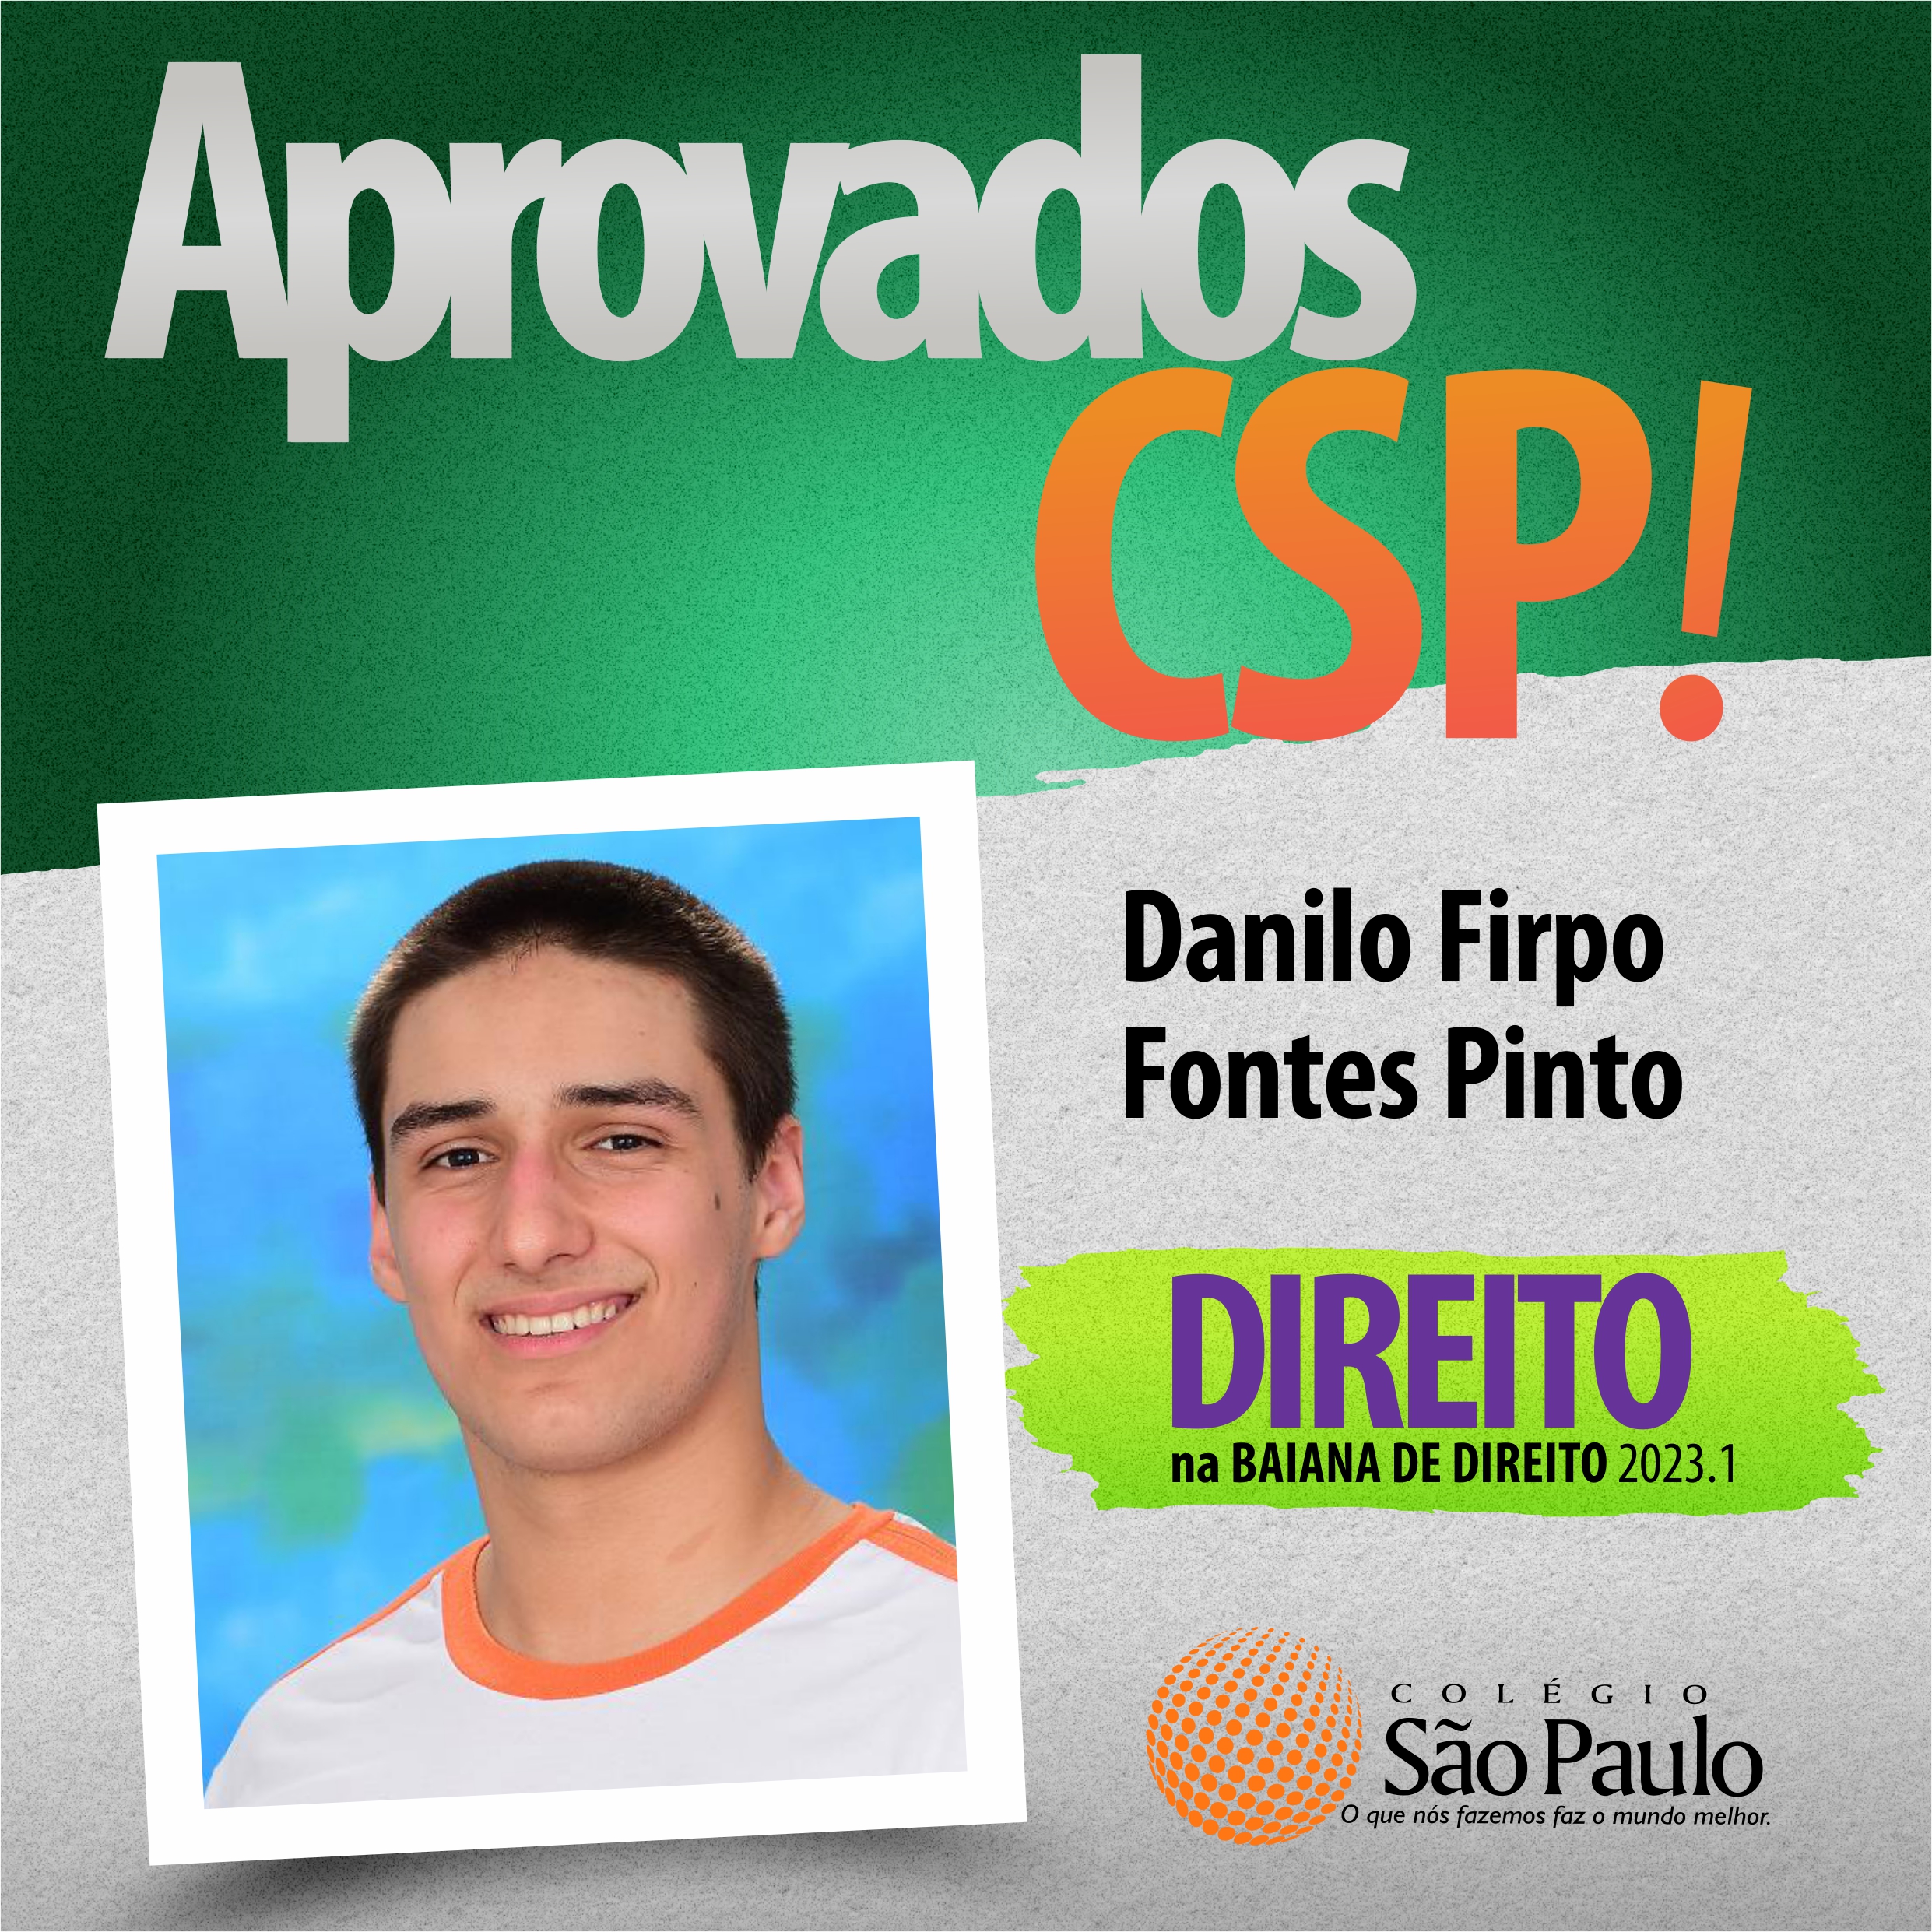 Danilo Firpo - Direito